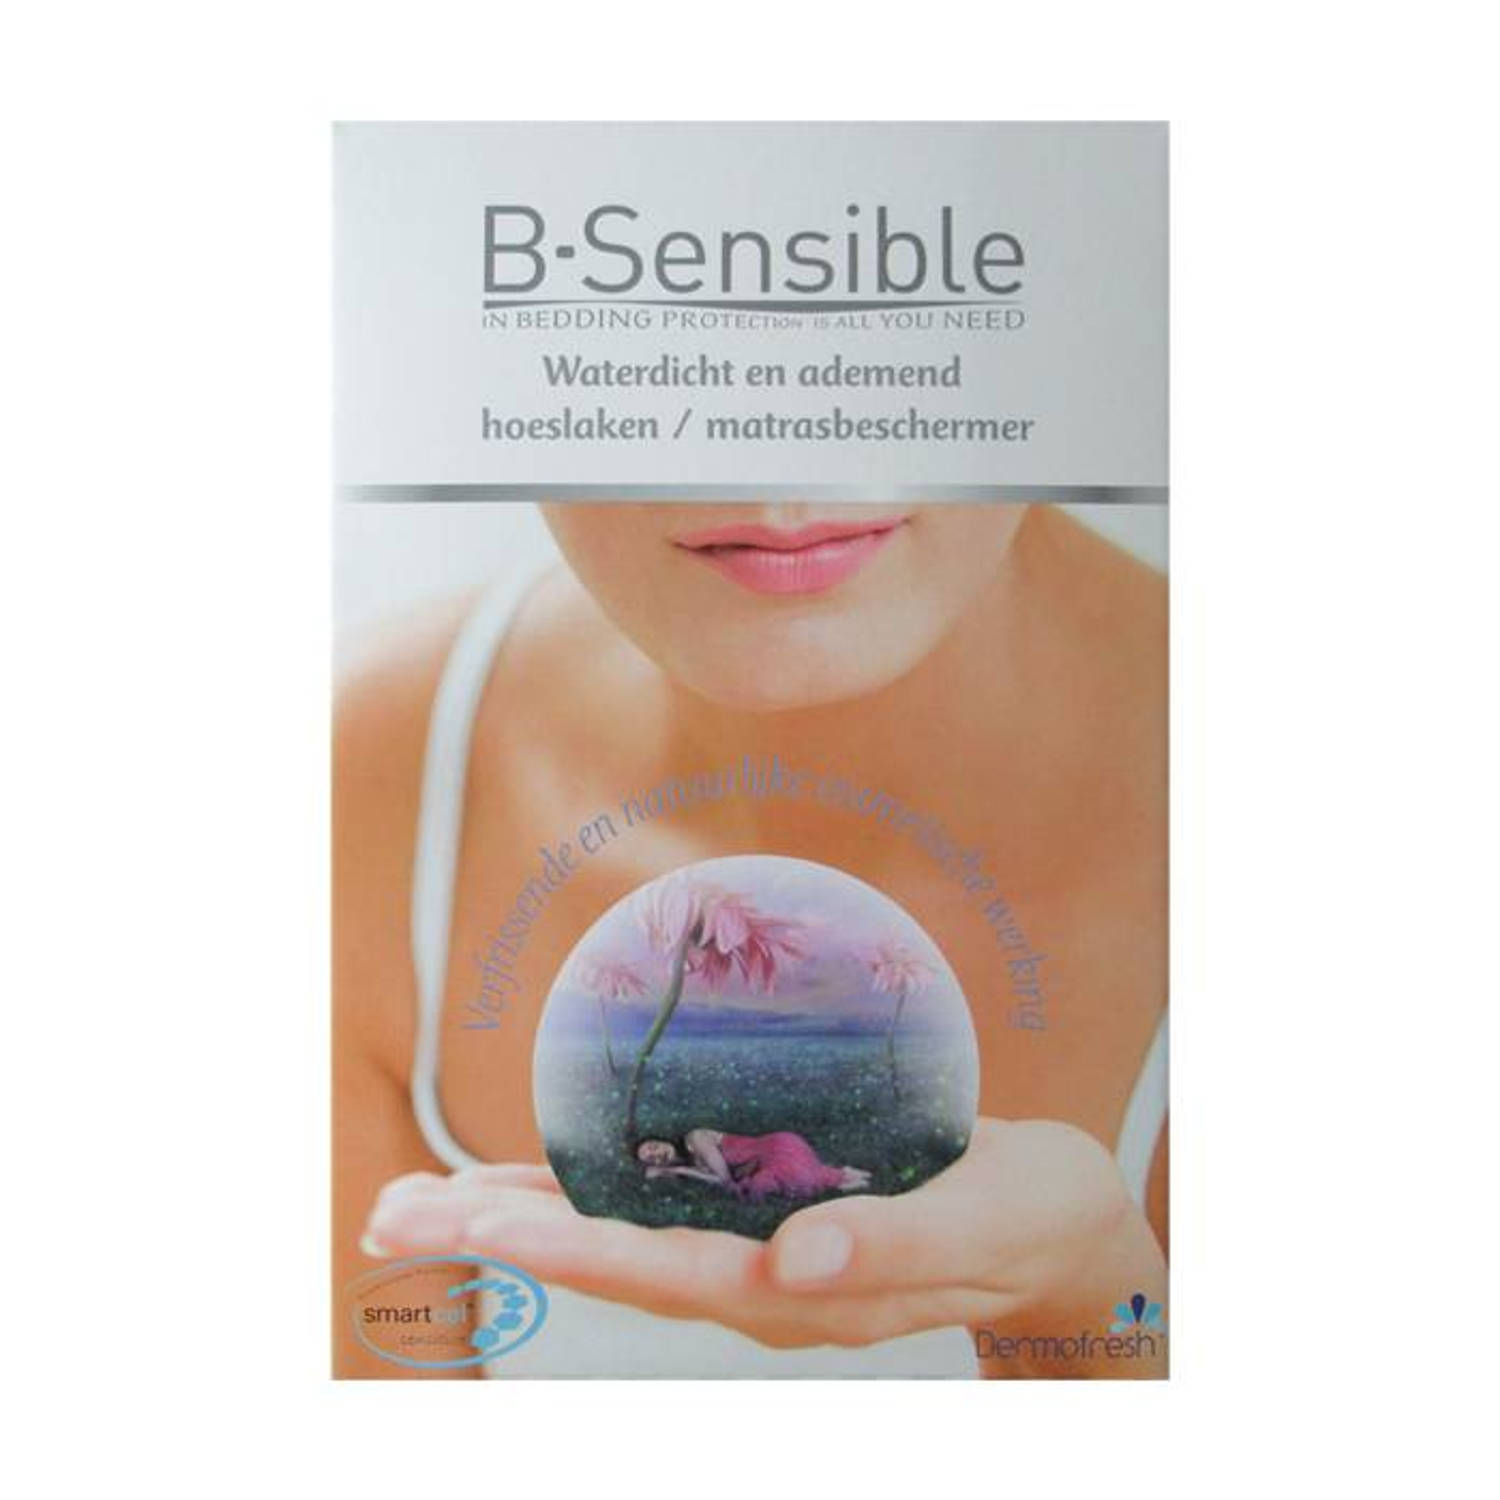 B-Sensible 2 in 1 waterdicht & ademend hoeslaken + matrasbeschermer - Wit - 80x200